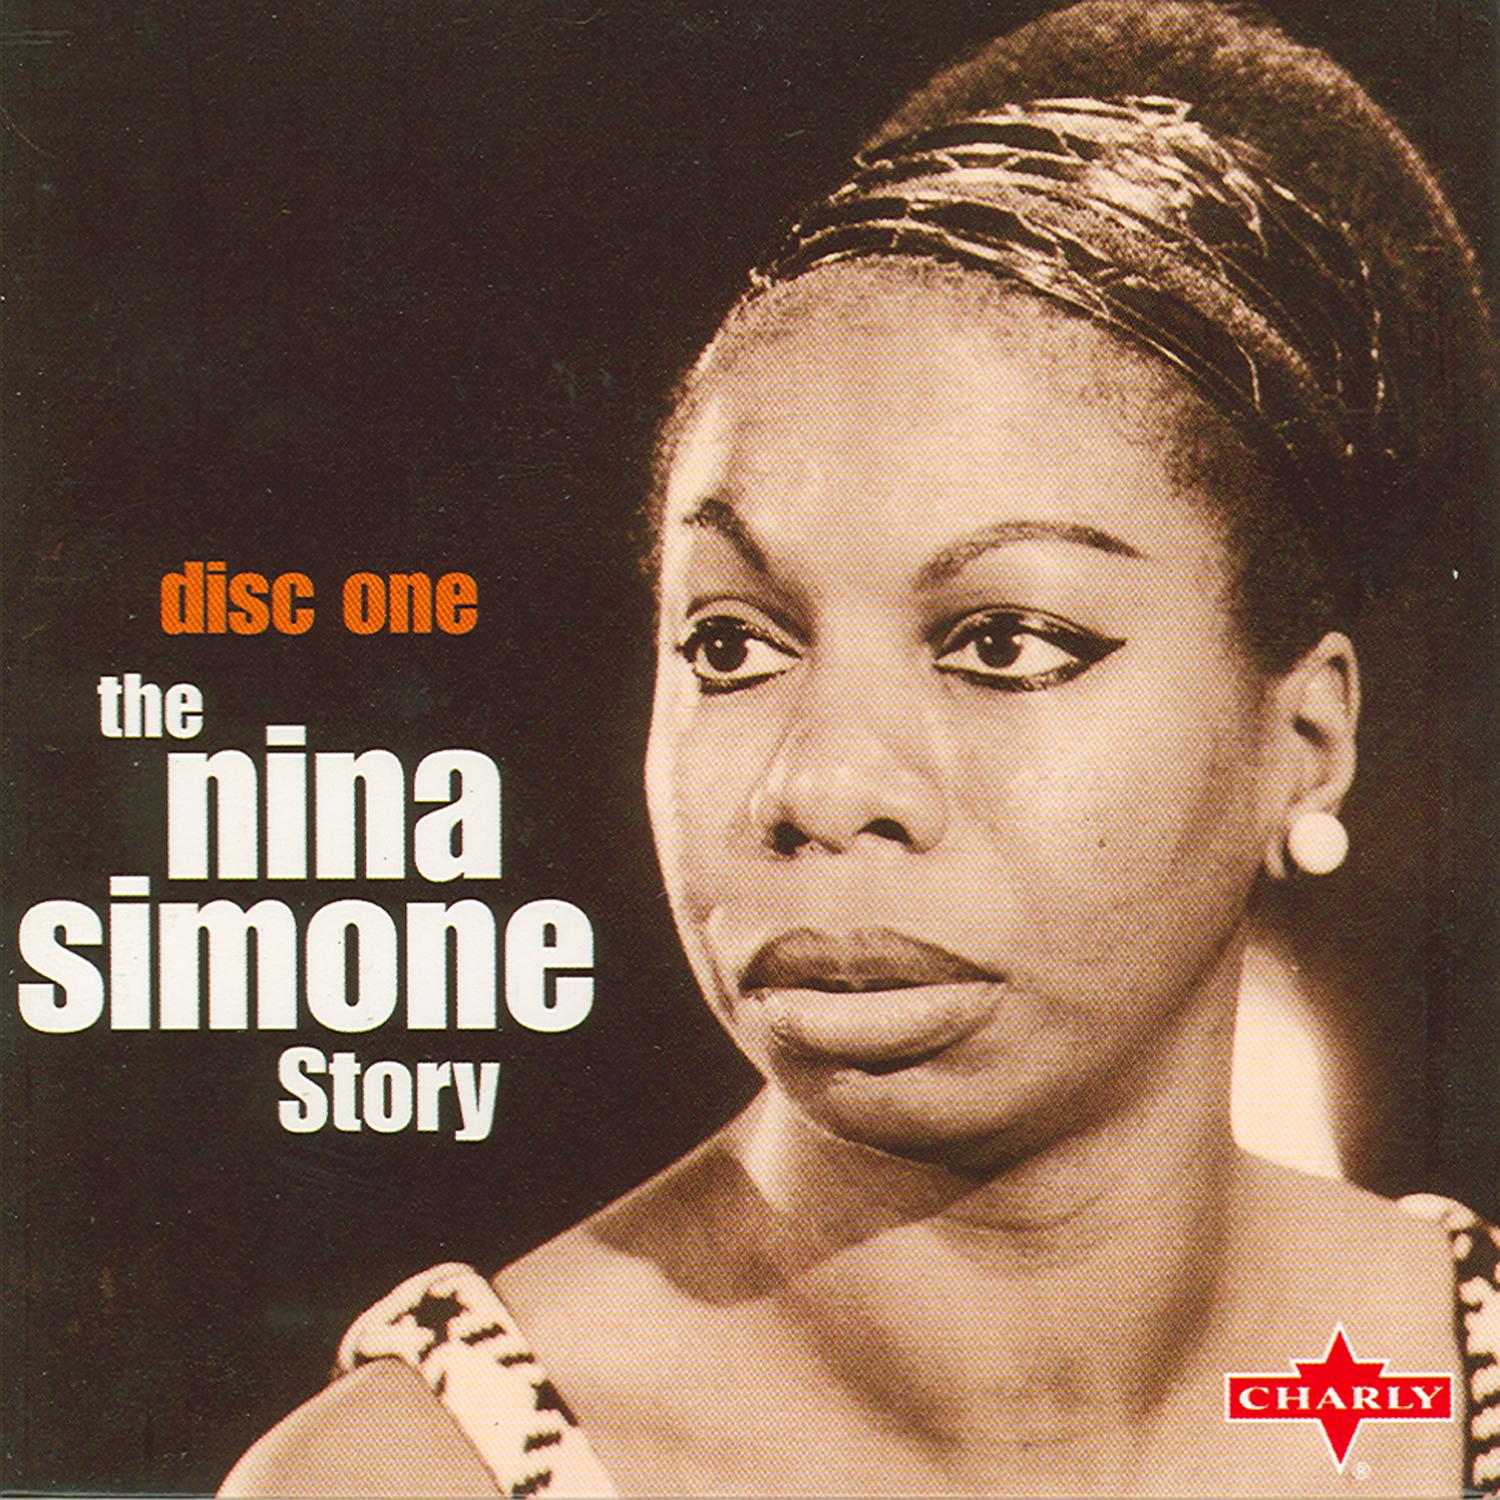 The Nina Simone Story Part 1